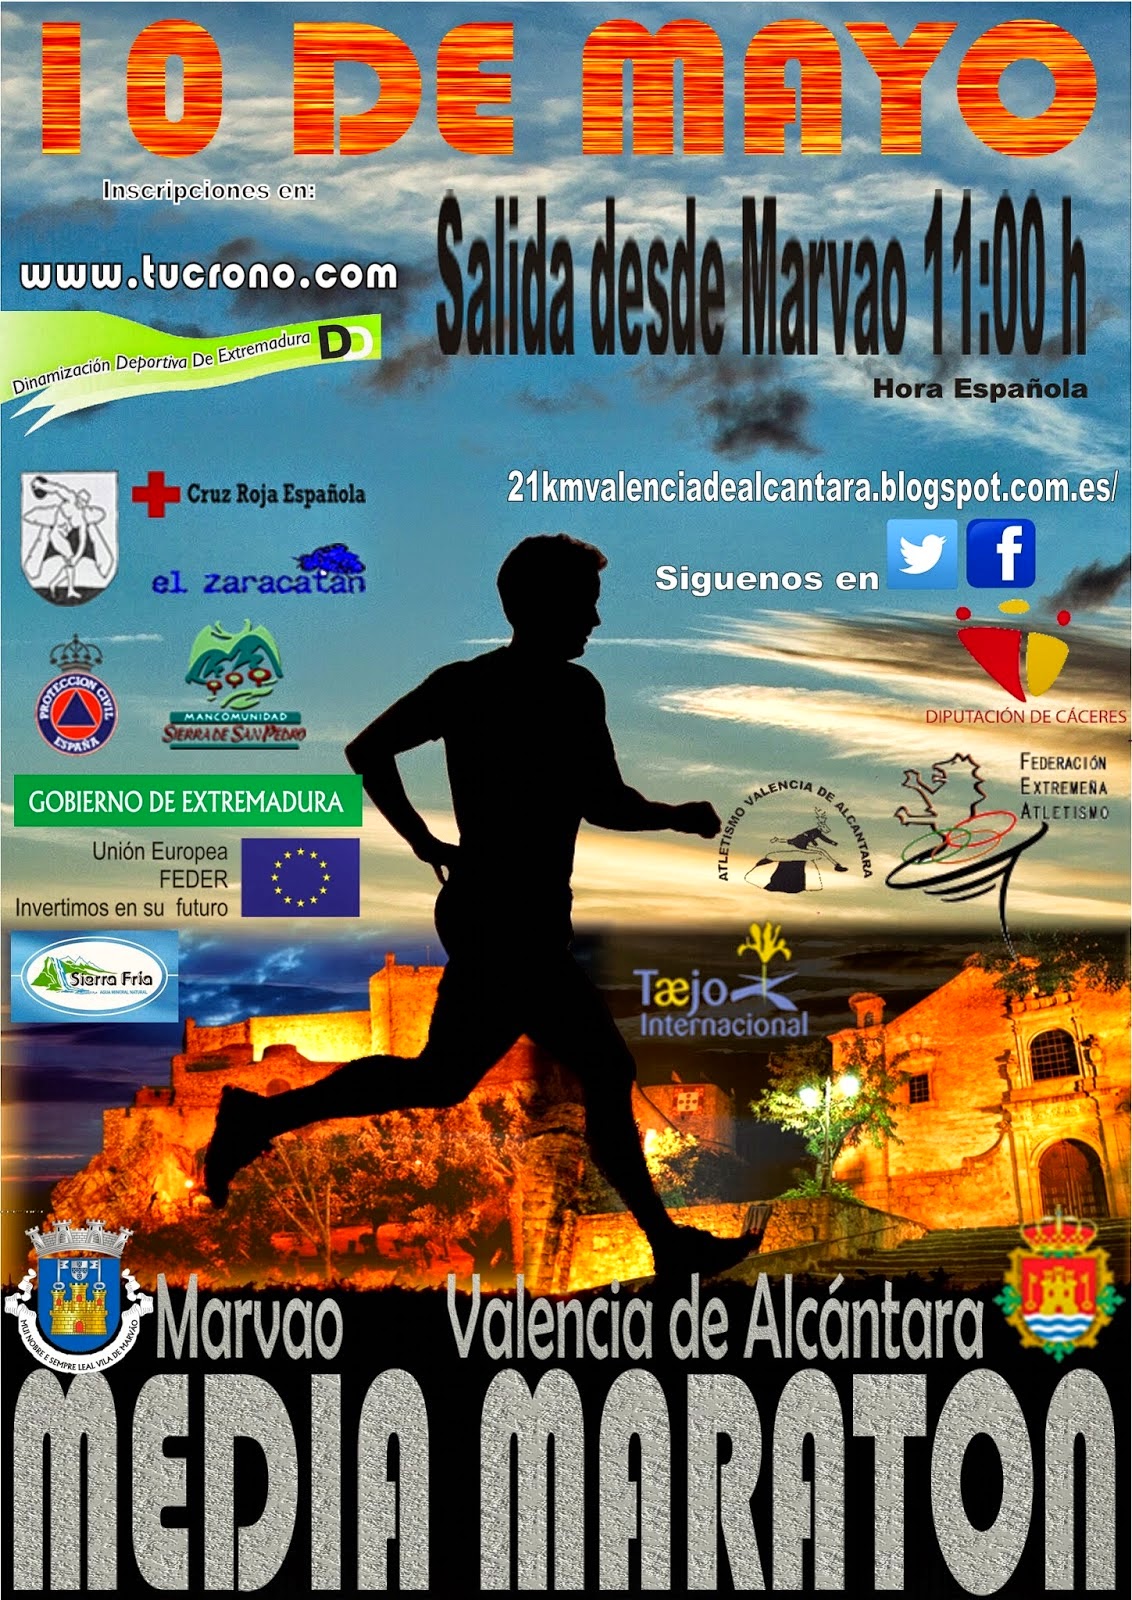 meia maratona marvao valencia alcantara 2015